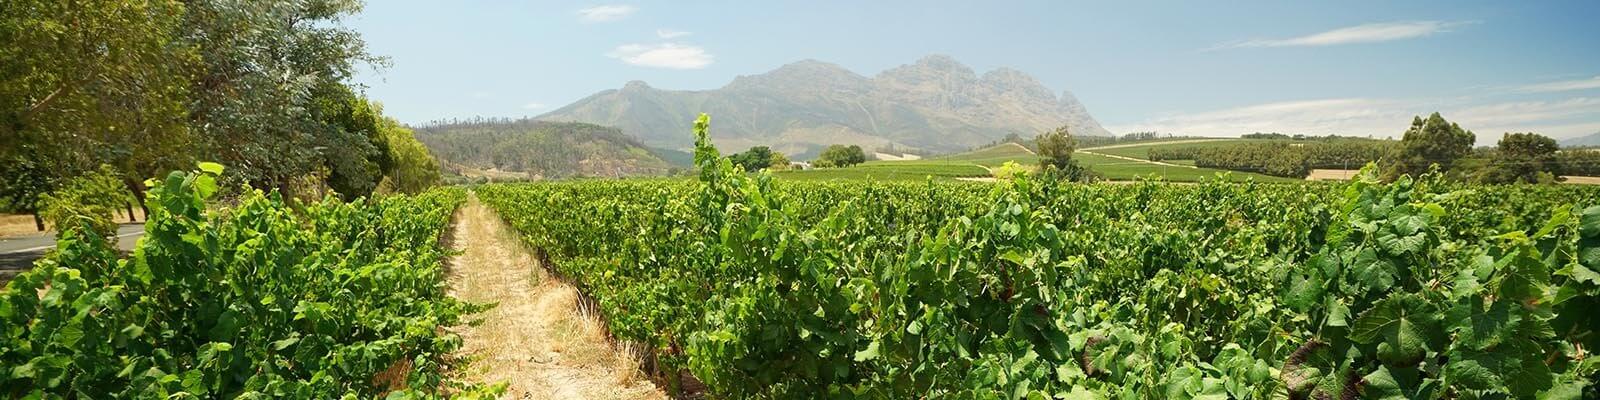 La nostra collezione di Sudafrica - Trovatelo da Onshore Cellars, il vostro fornitore di vini per yacht